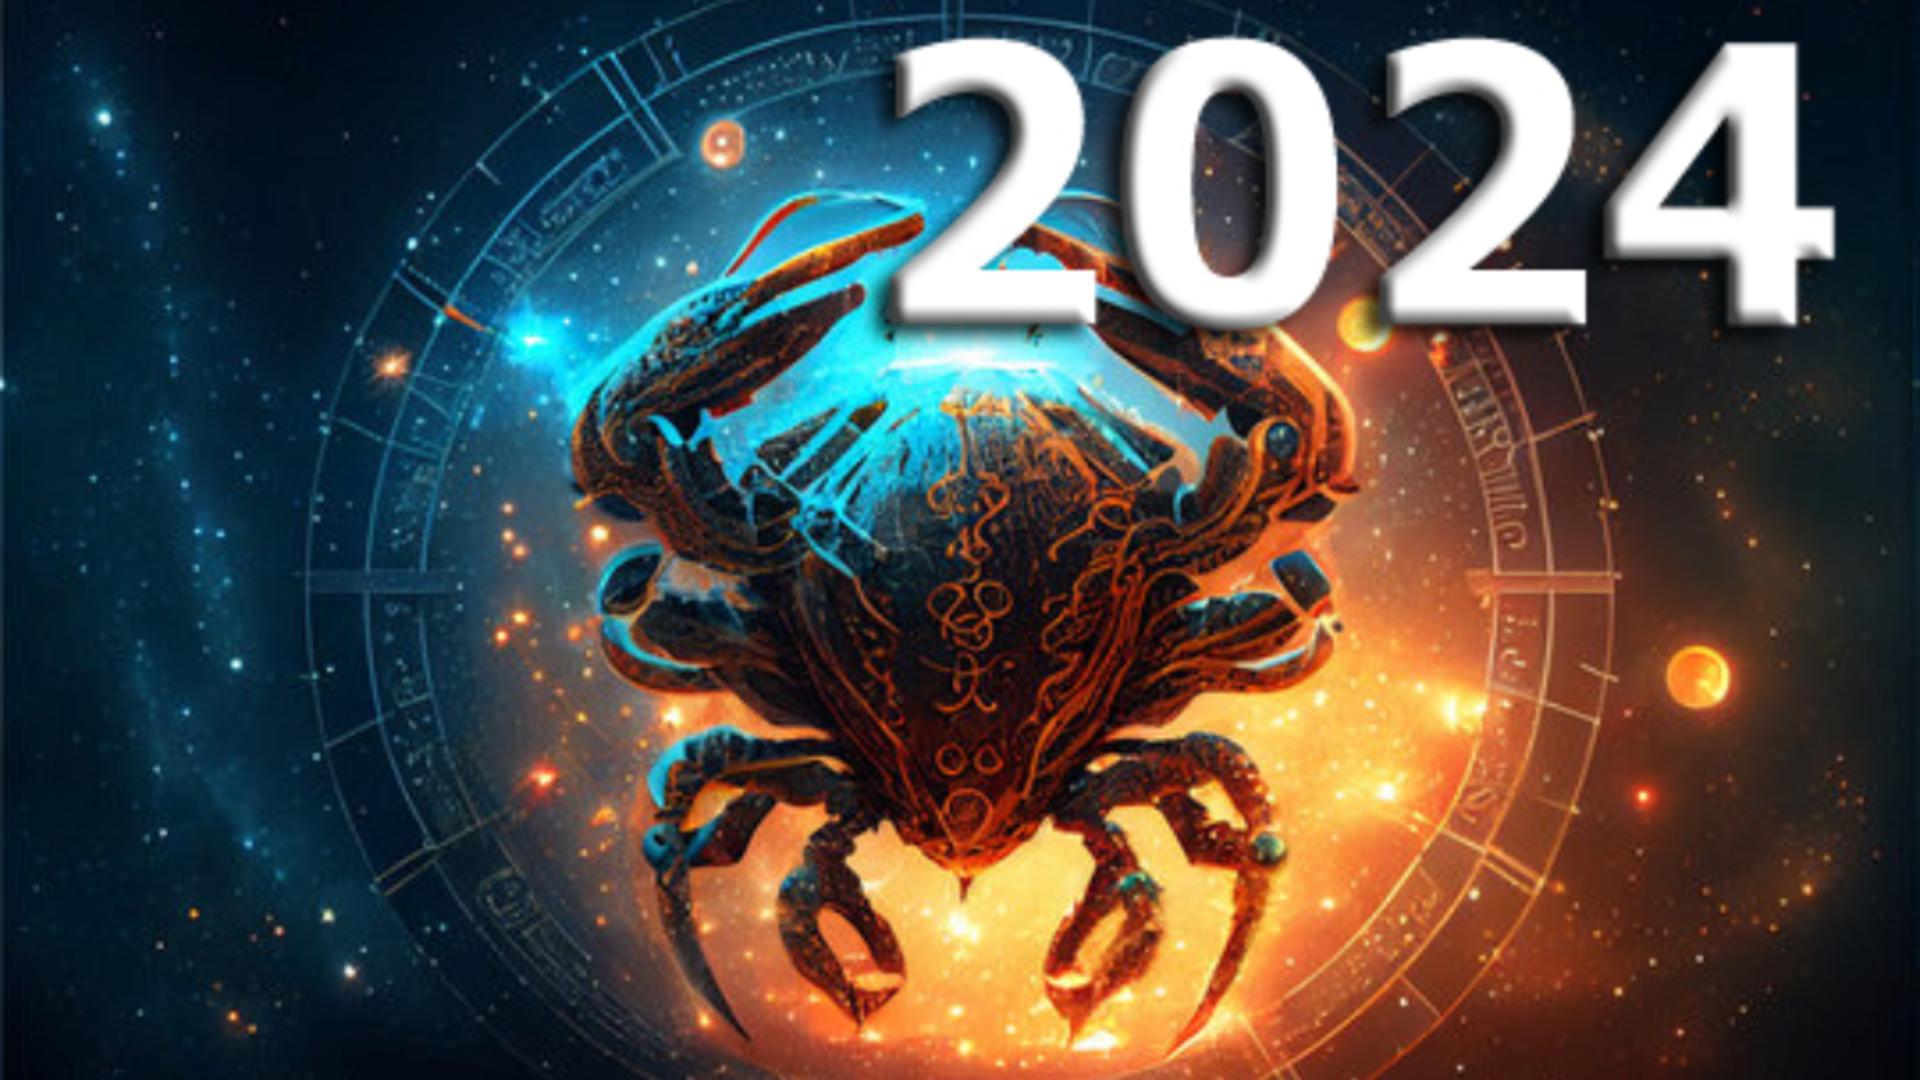 Horoscopul anului 2024 – Rac. Astrele te provoacă să ieși din zona de confort și să ai mai multă încredere în tine. Noroc la bani